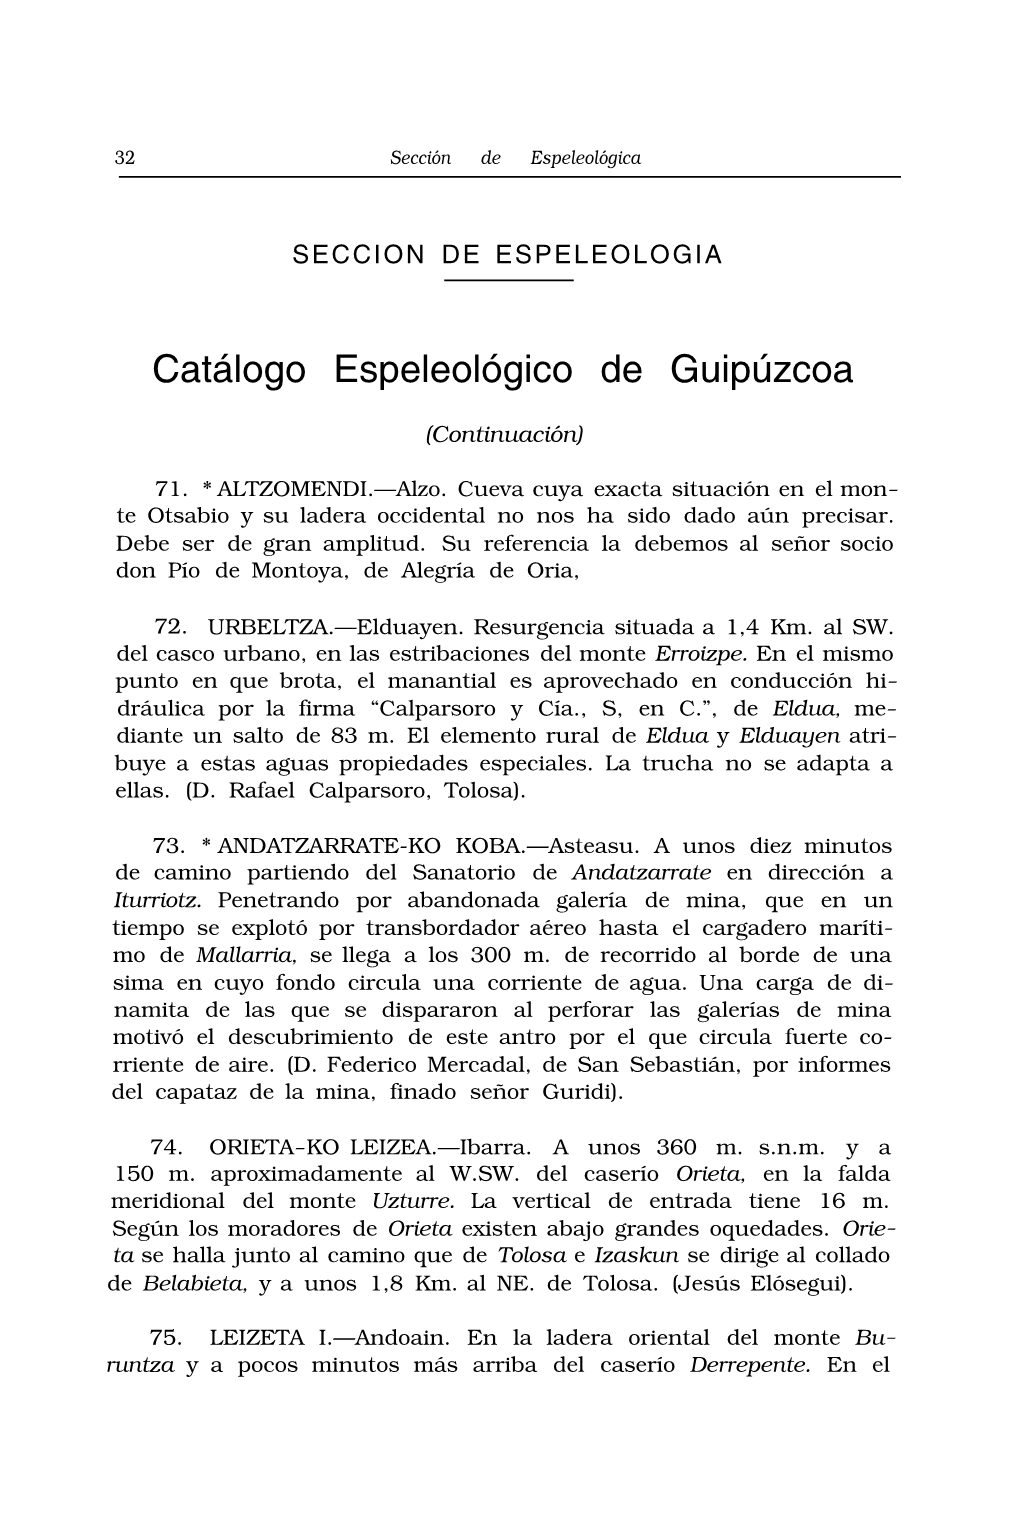 Catálogo Espeleológico De Guipúzcoa